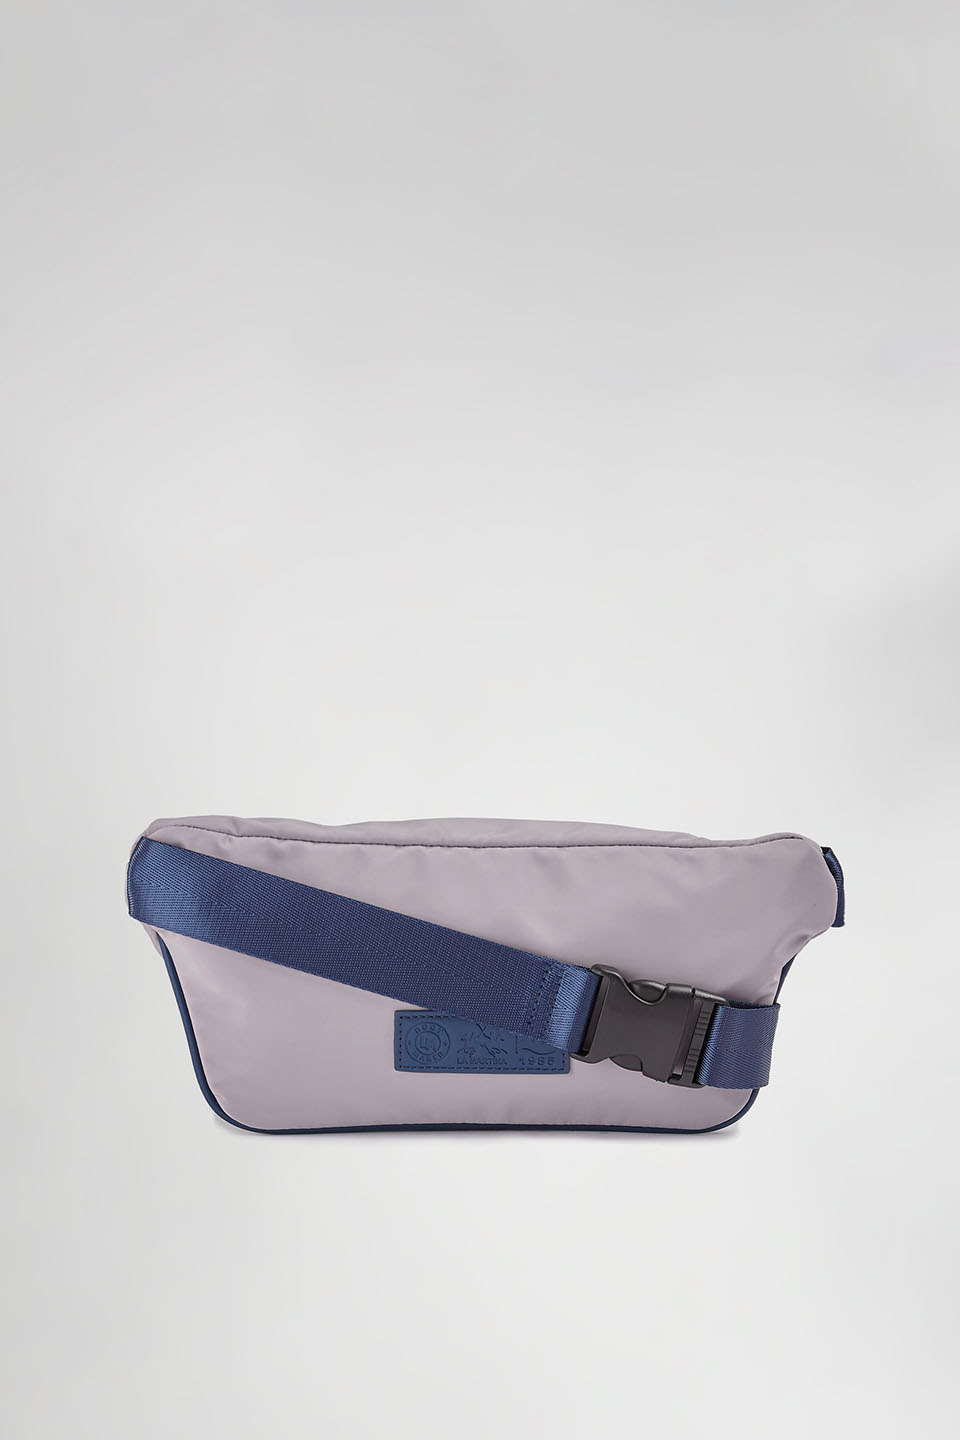 Nylon belt bag - La Martina - Official Online Shop